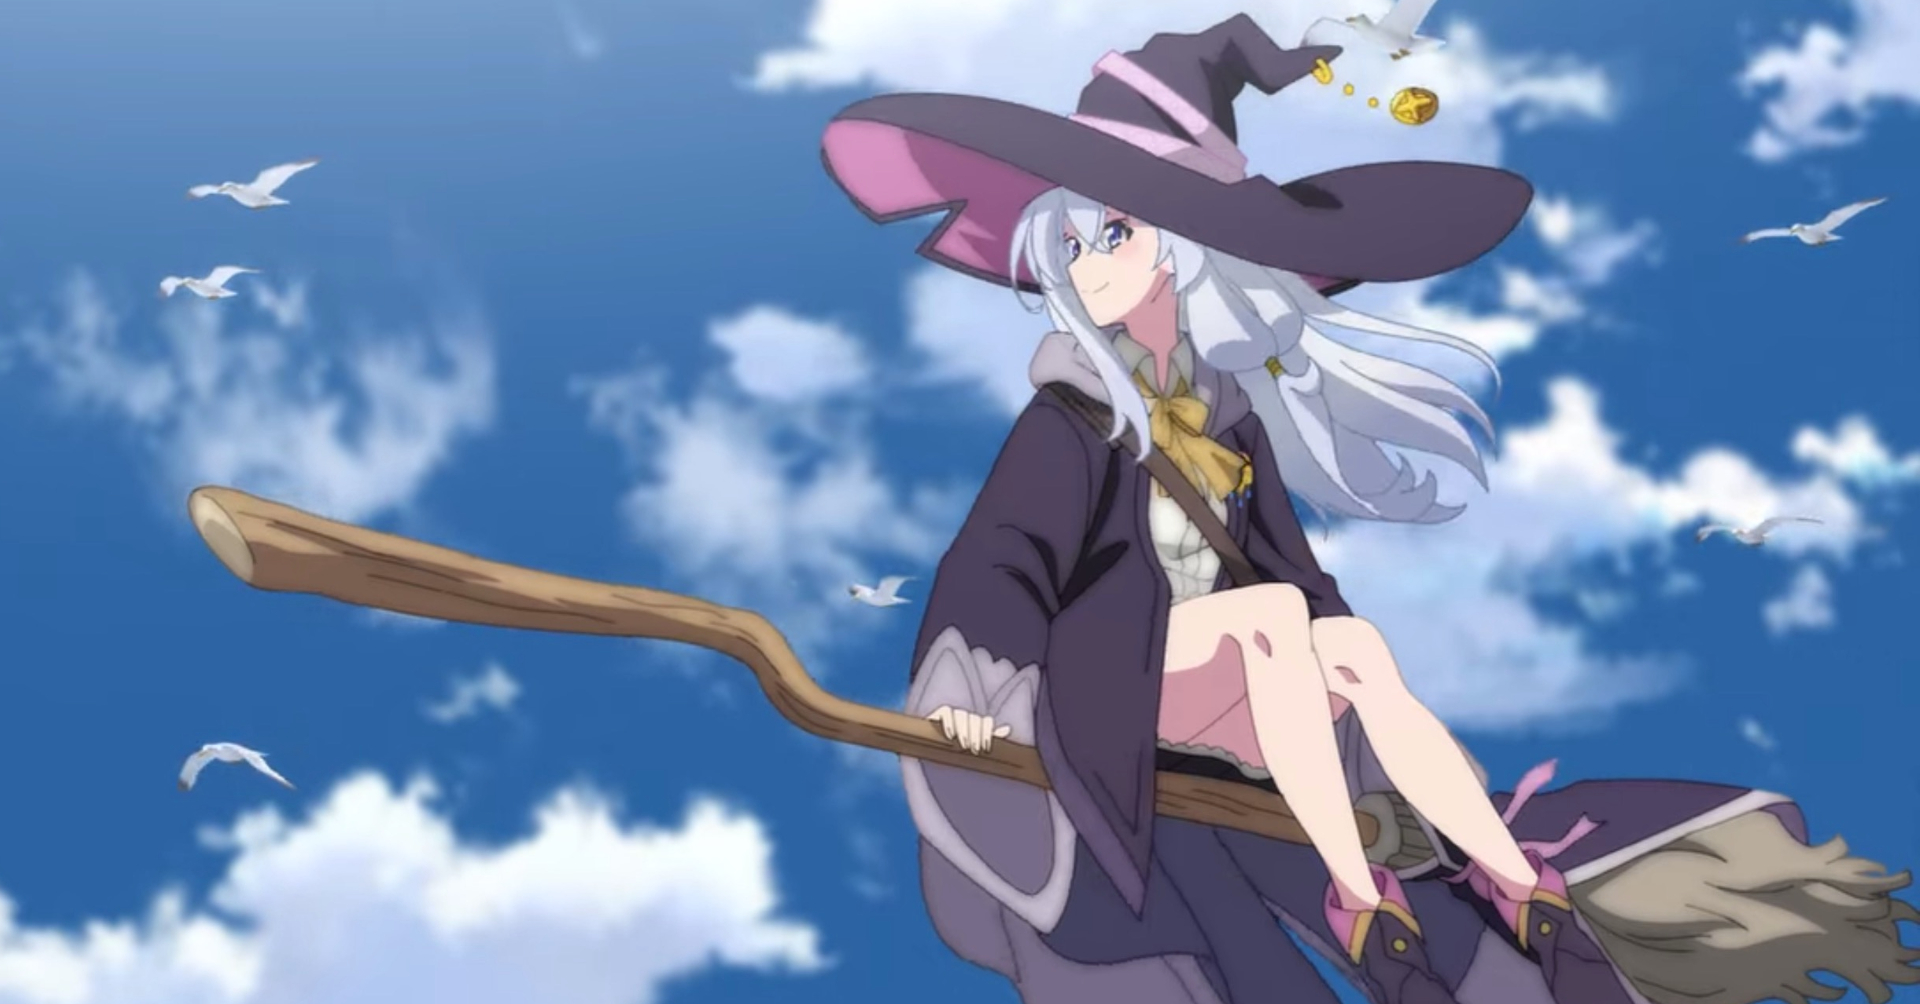 Witches Tv Series and Anime Movies  Sakura Fairies